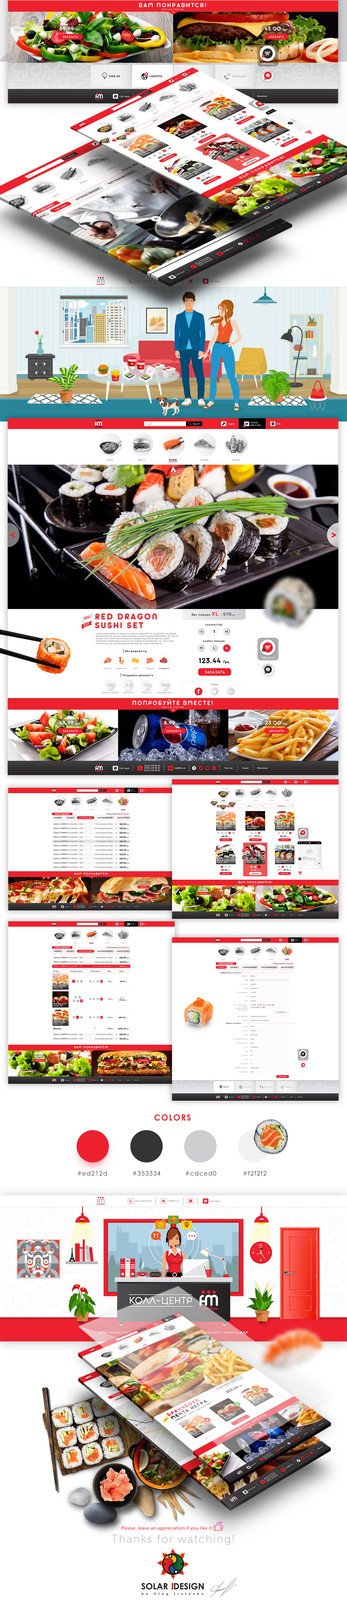 FOOD MILES | Site Shop Concept